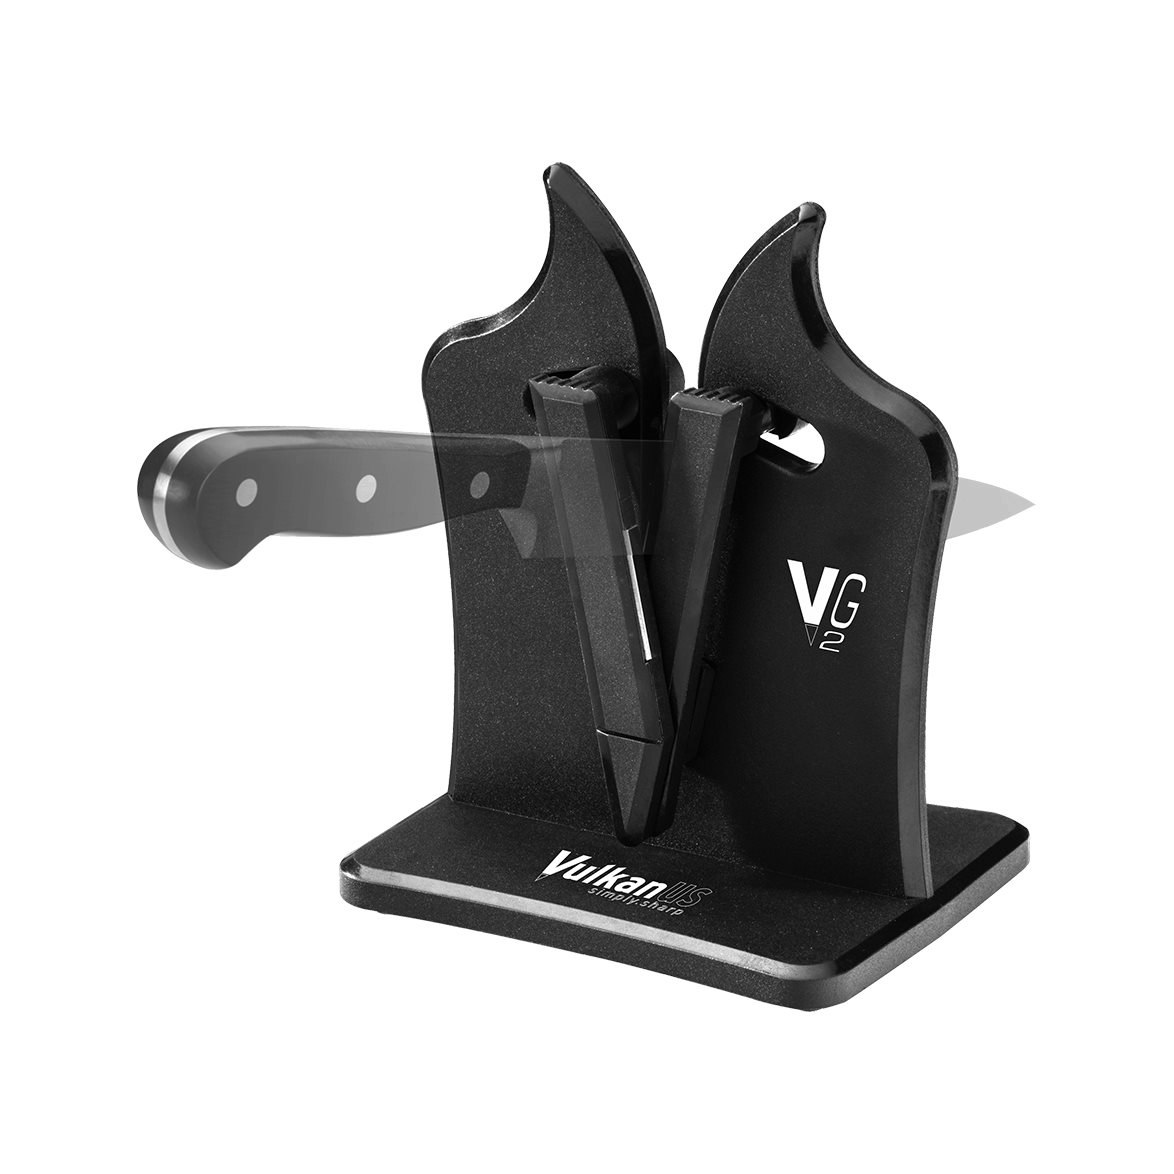 Professional VG2 Knife Sharpener